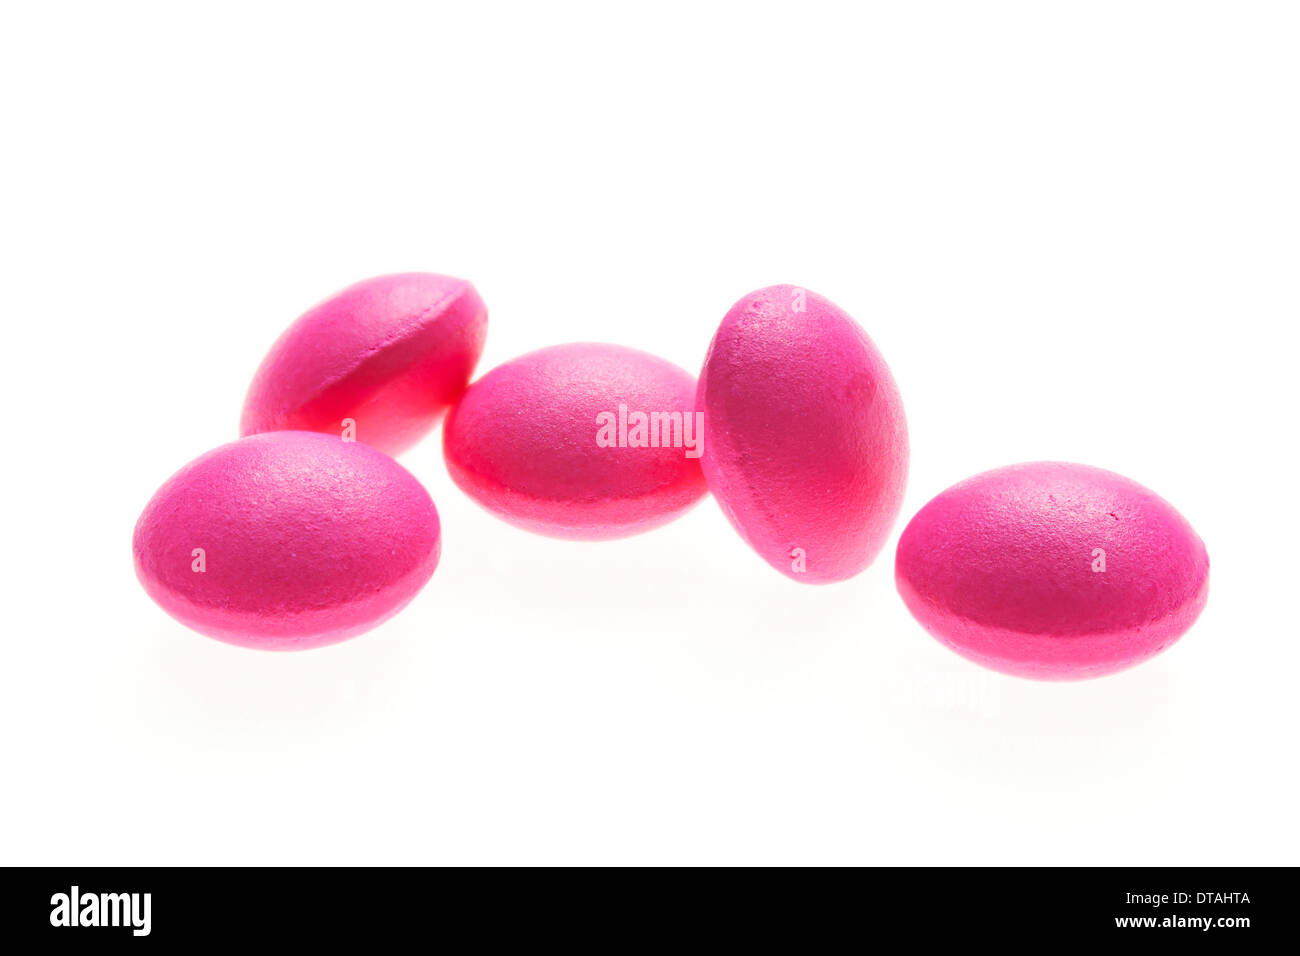 Rosa Runde Ibuprofen 200mg Tabletten auf weißem Hintergrund Stockfotografie  - Alamy